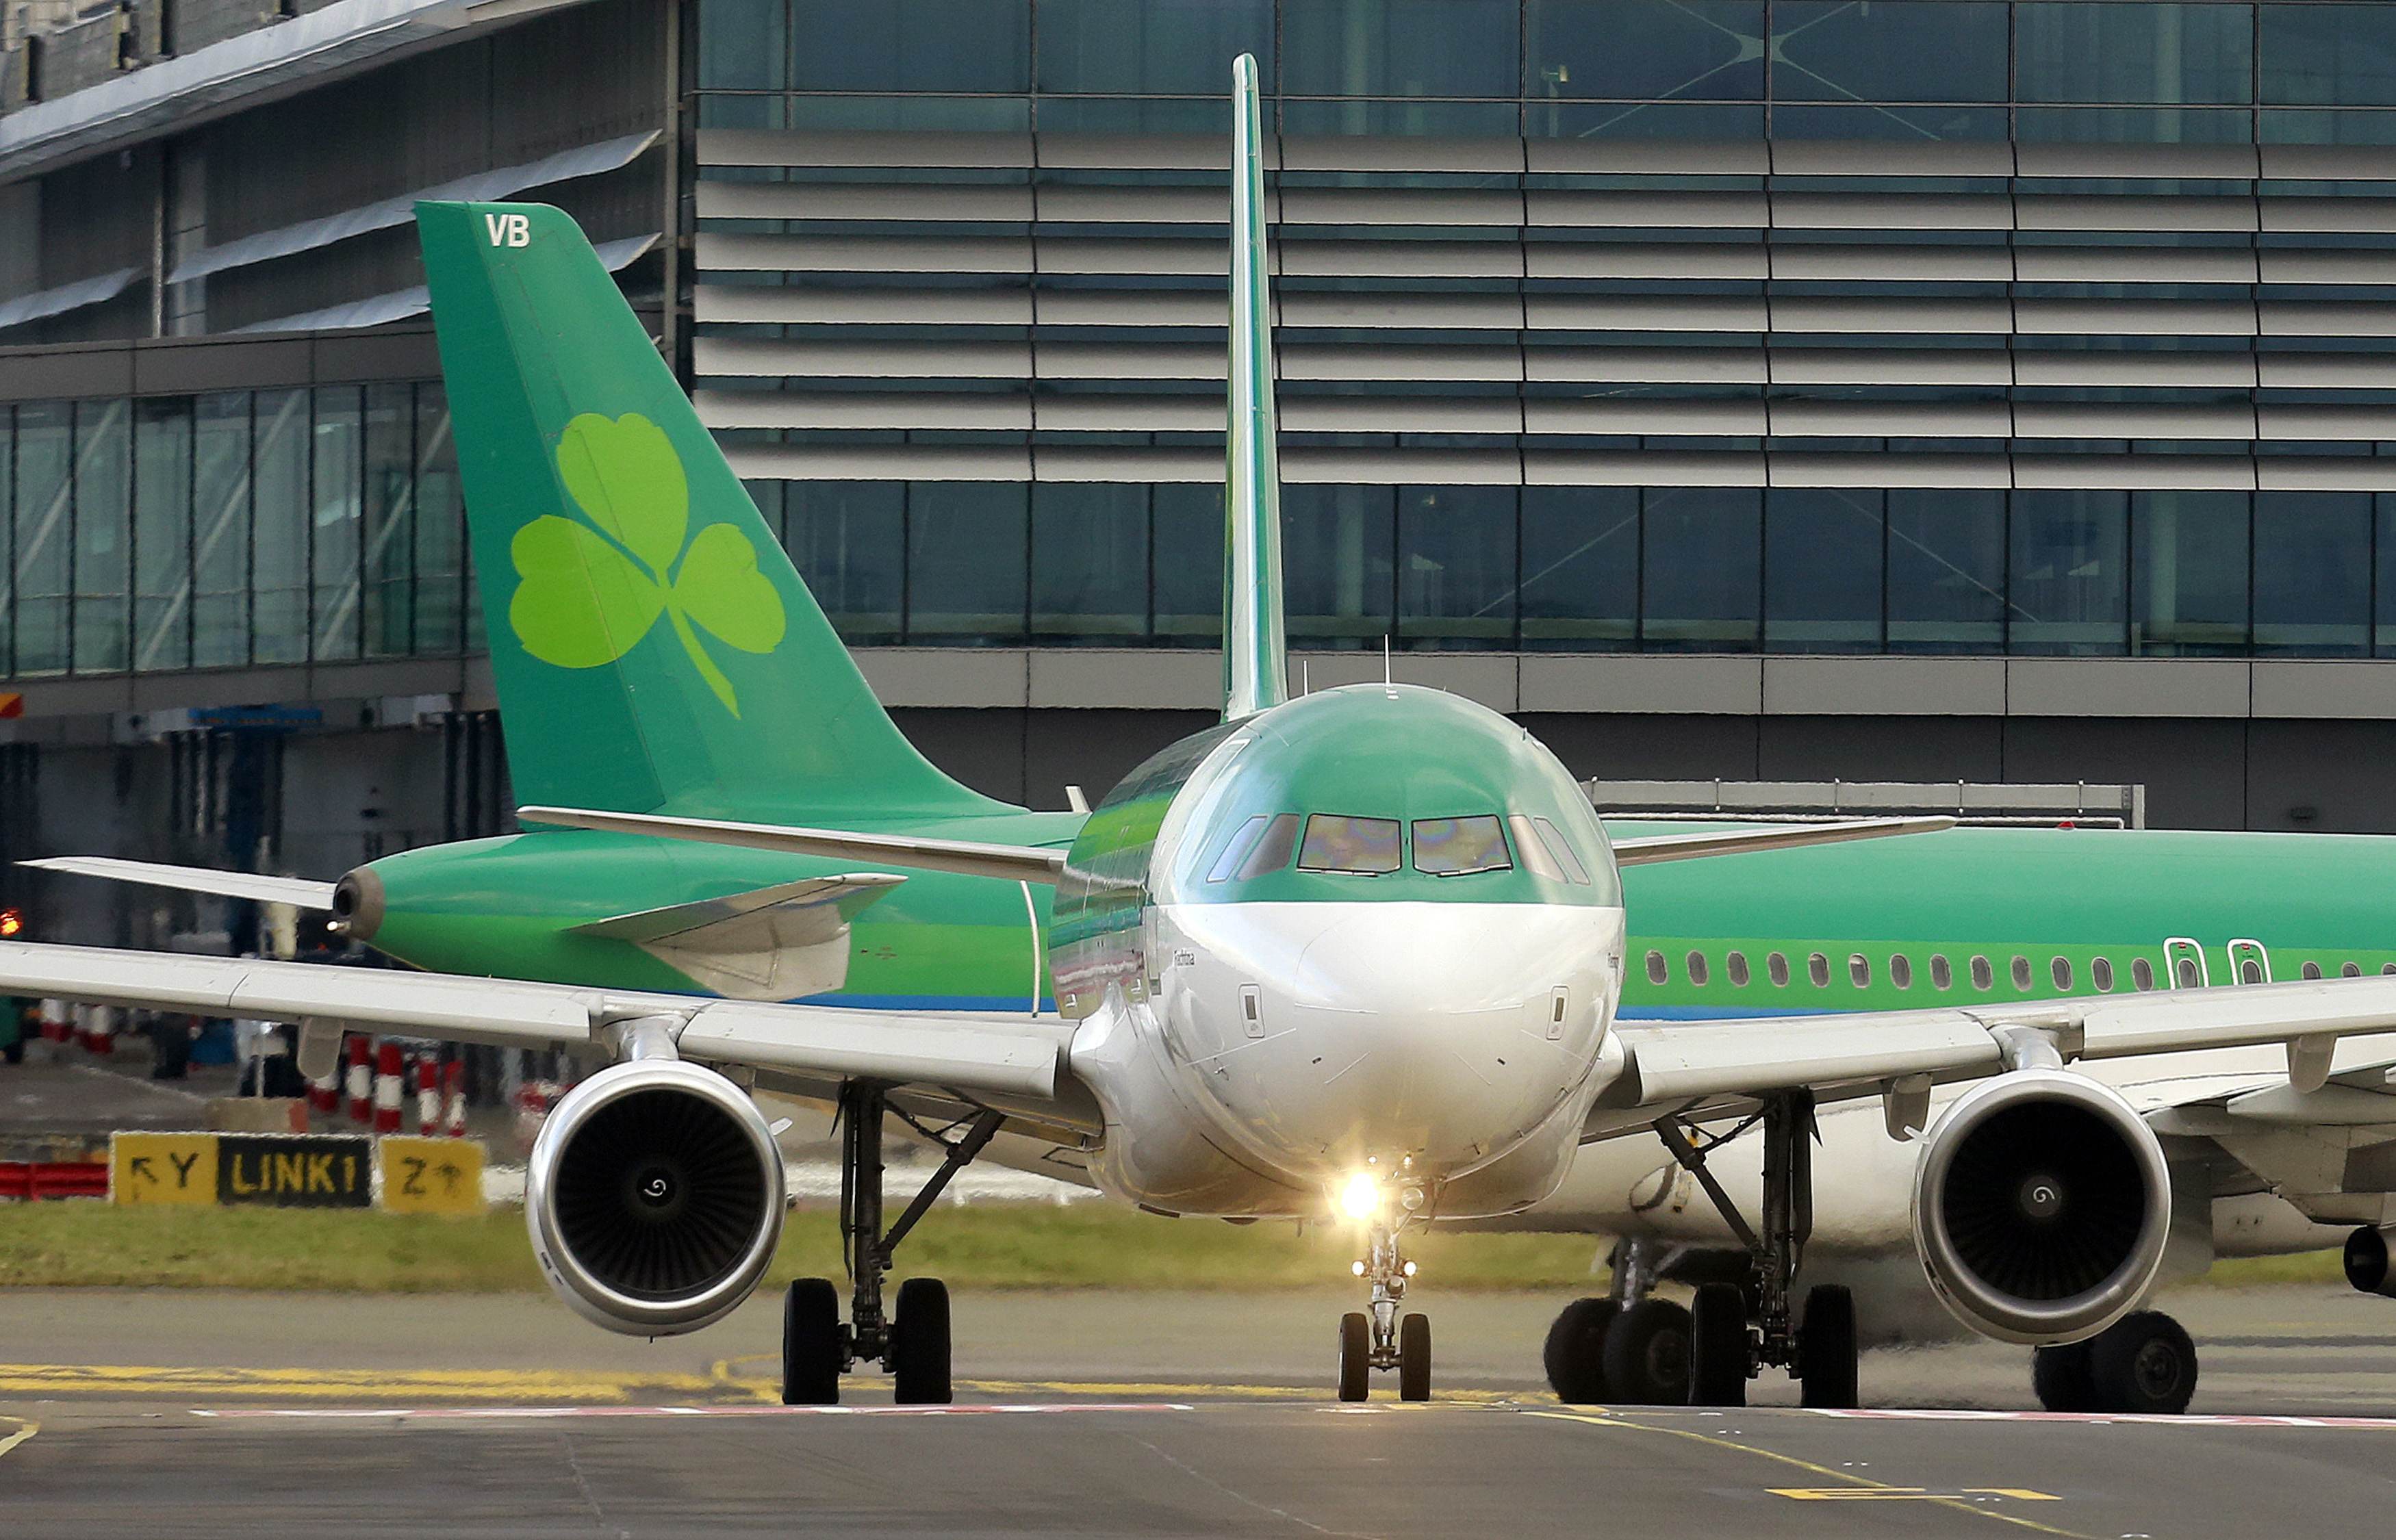 Problème informatique : Aer Lingus annule de nombreux vols